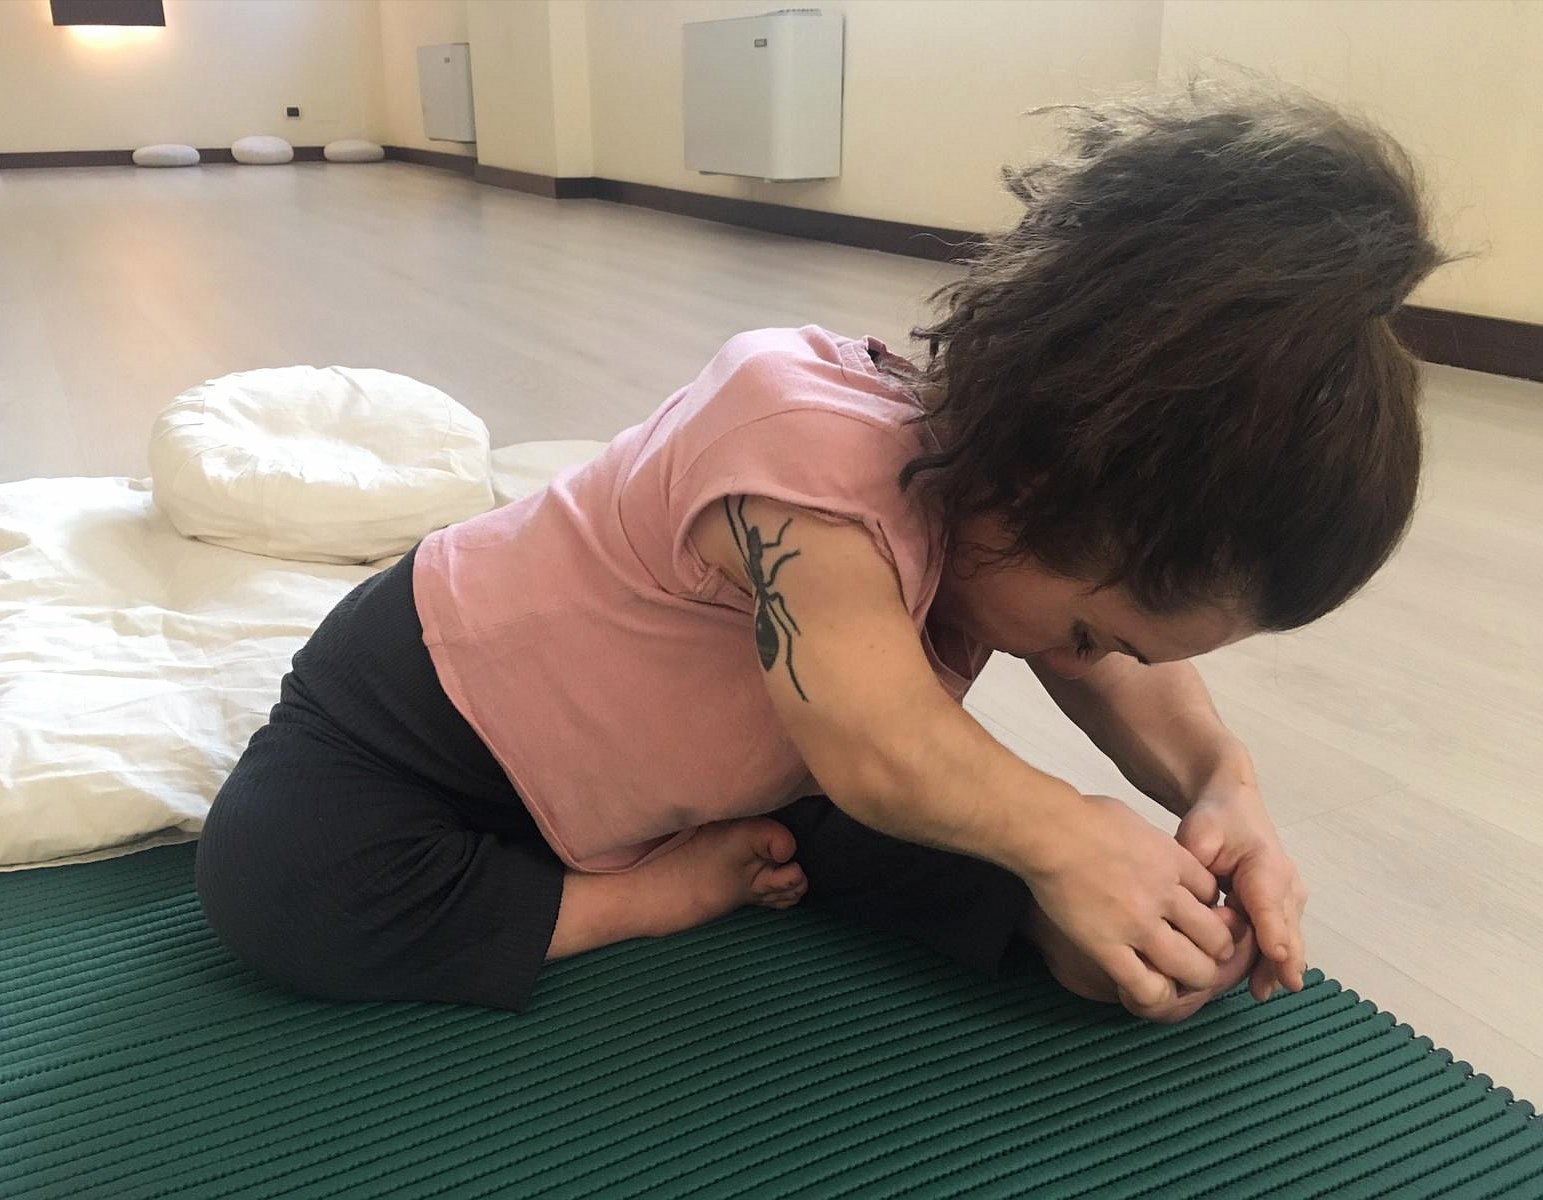 Nanabianca che fa yoga (si prende il piede con le mani)